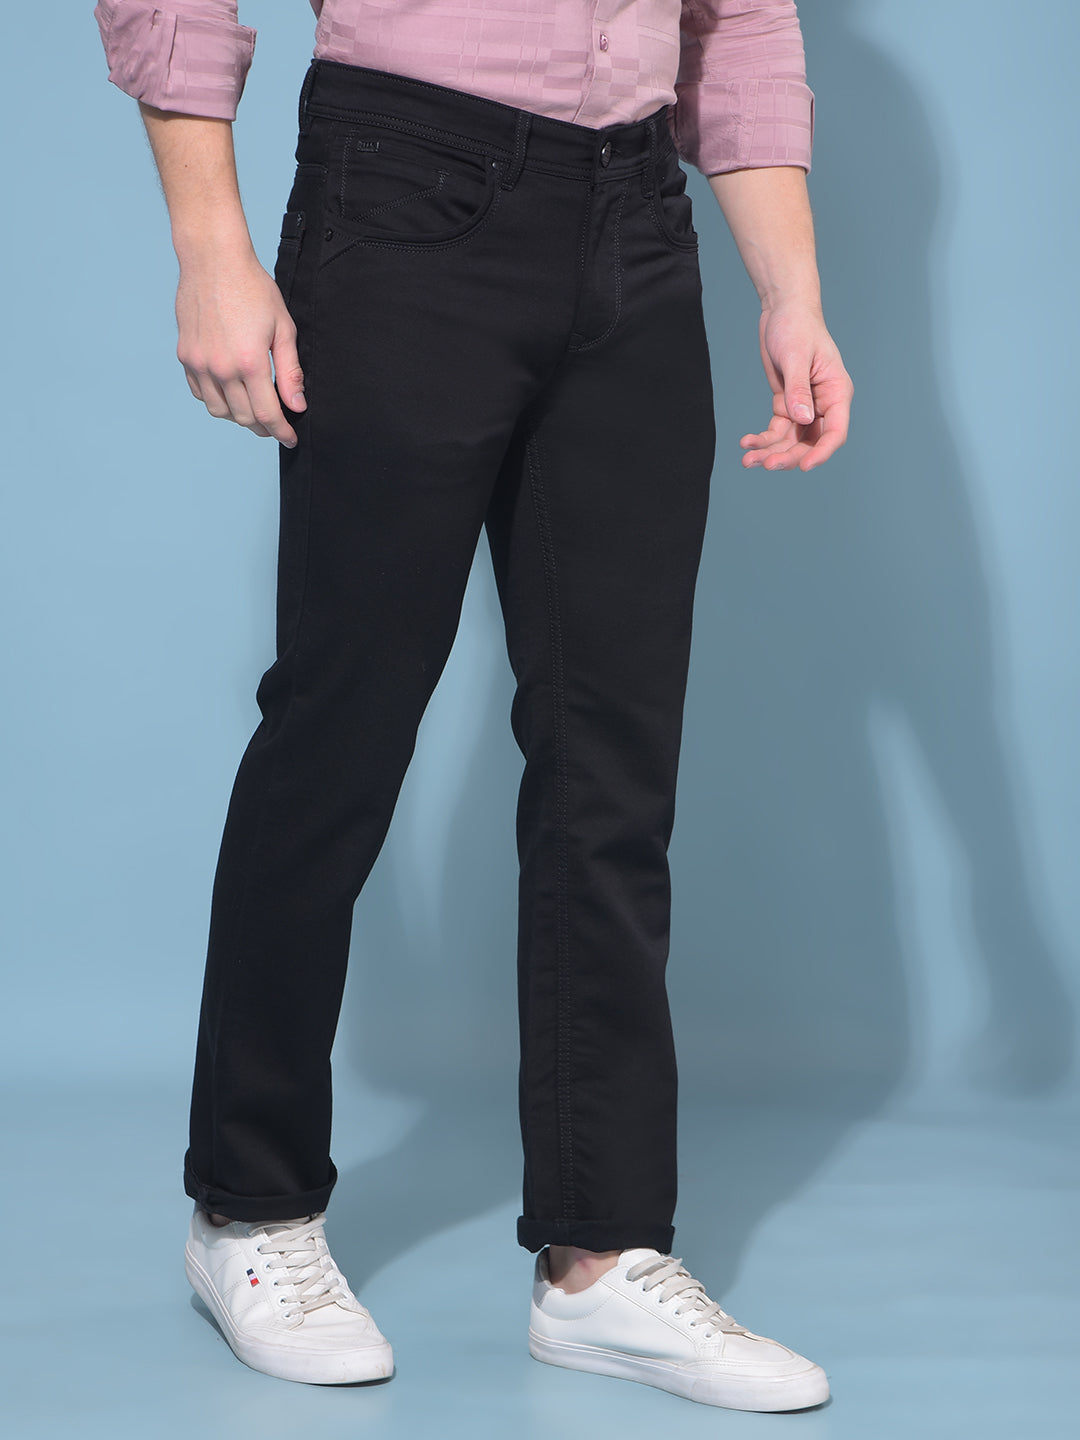 Black Straight Stretchable Jeans-Men Jeans-Crimsoune Club